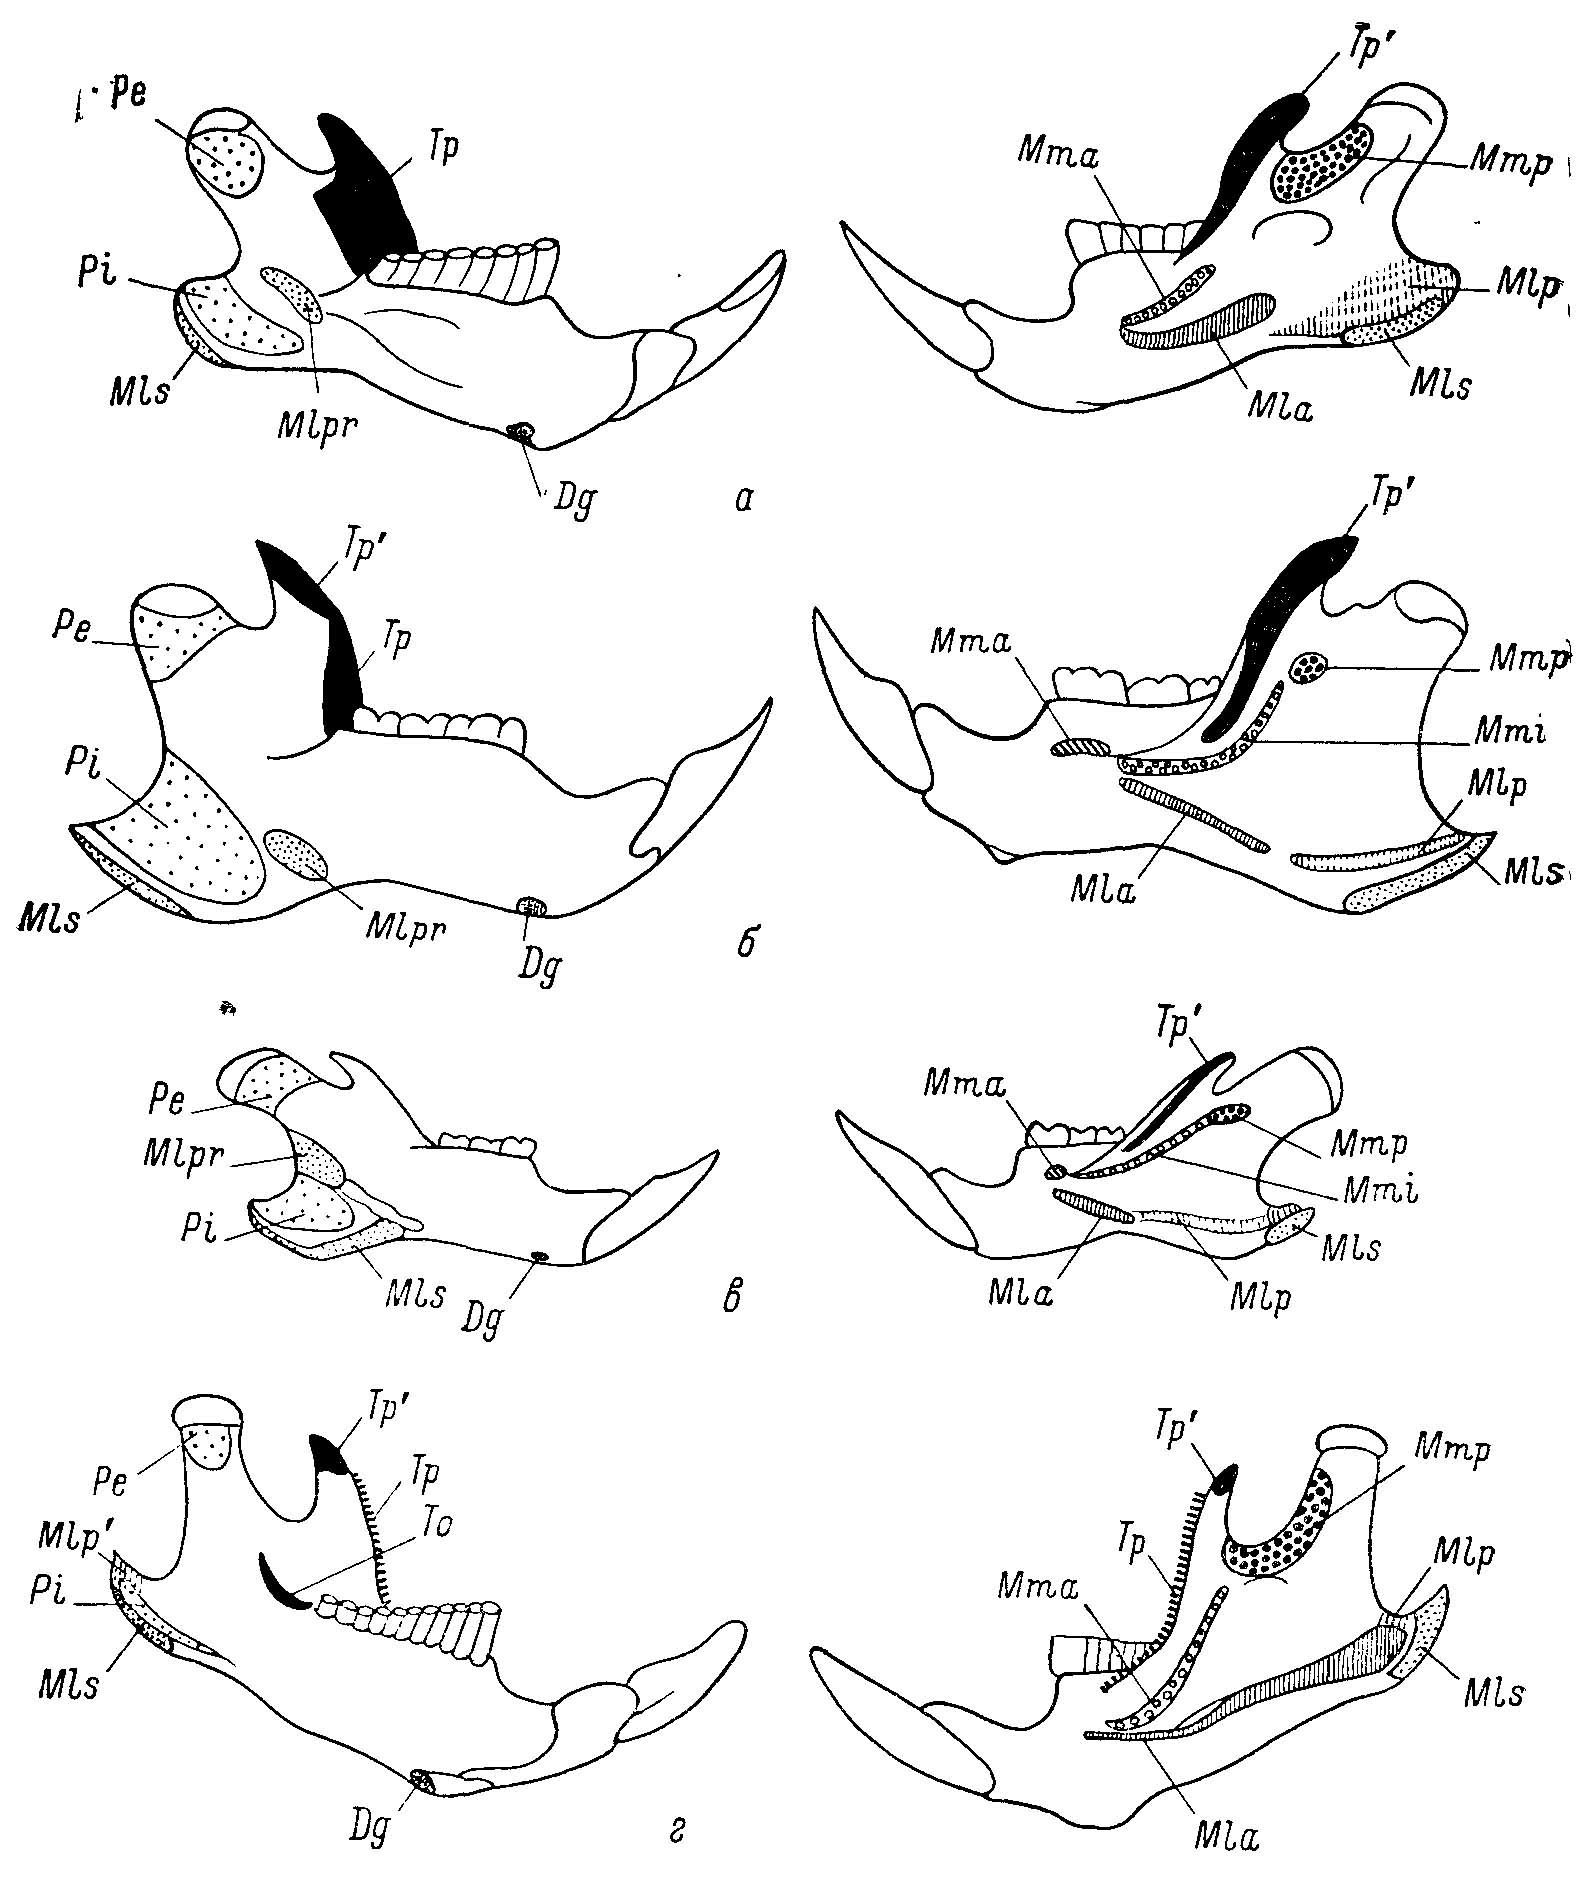 Рис. 4. Изменения мест крепления жевательных мускулов на нижней челюсти у Cricetinae, Nesomyinae и Microtinae. а, г — по Repenning, 1968; б, в — ориг. Левые половины нижних челюстей: левый ряд — вид с медиальной стороны, правый ряд — вид с латеральной стороны, а — Cricetinae — Neotoma mexicana Baird; б, в — Nesomyinae: б — Brachyuromys betsileoensis Bartl., в — Macrotarsomys bastardi Milner Edw. et Grandid.; г — Microtinae — Microtus longicaudus Merriam. Обозначения мест крепления мышц. Dg — m. digastricus, Mia — m. masseter lateralis profundus pars anterior, Mlp и Mlp' — разные области крепления m. mass. lateralis profindus pars posterior, Mis — m. mass. lat. pars superficialis, Mlpr — pars reflexa, Mma — m. mass. medialis pars anterior, Mmi — m. mass. medialis pars intermedius, Mmp — m. mass. medialis pars posterior, Pe — m. pterygoideus externus, Pi — m. pterygoideus internus, To — m. temporalis pars orbitalis, Tp и Tp' — разное области крепления m. temporalis pars profundus и pars superficialis.